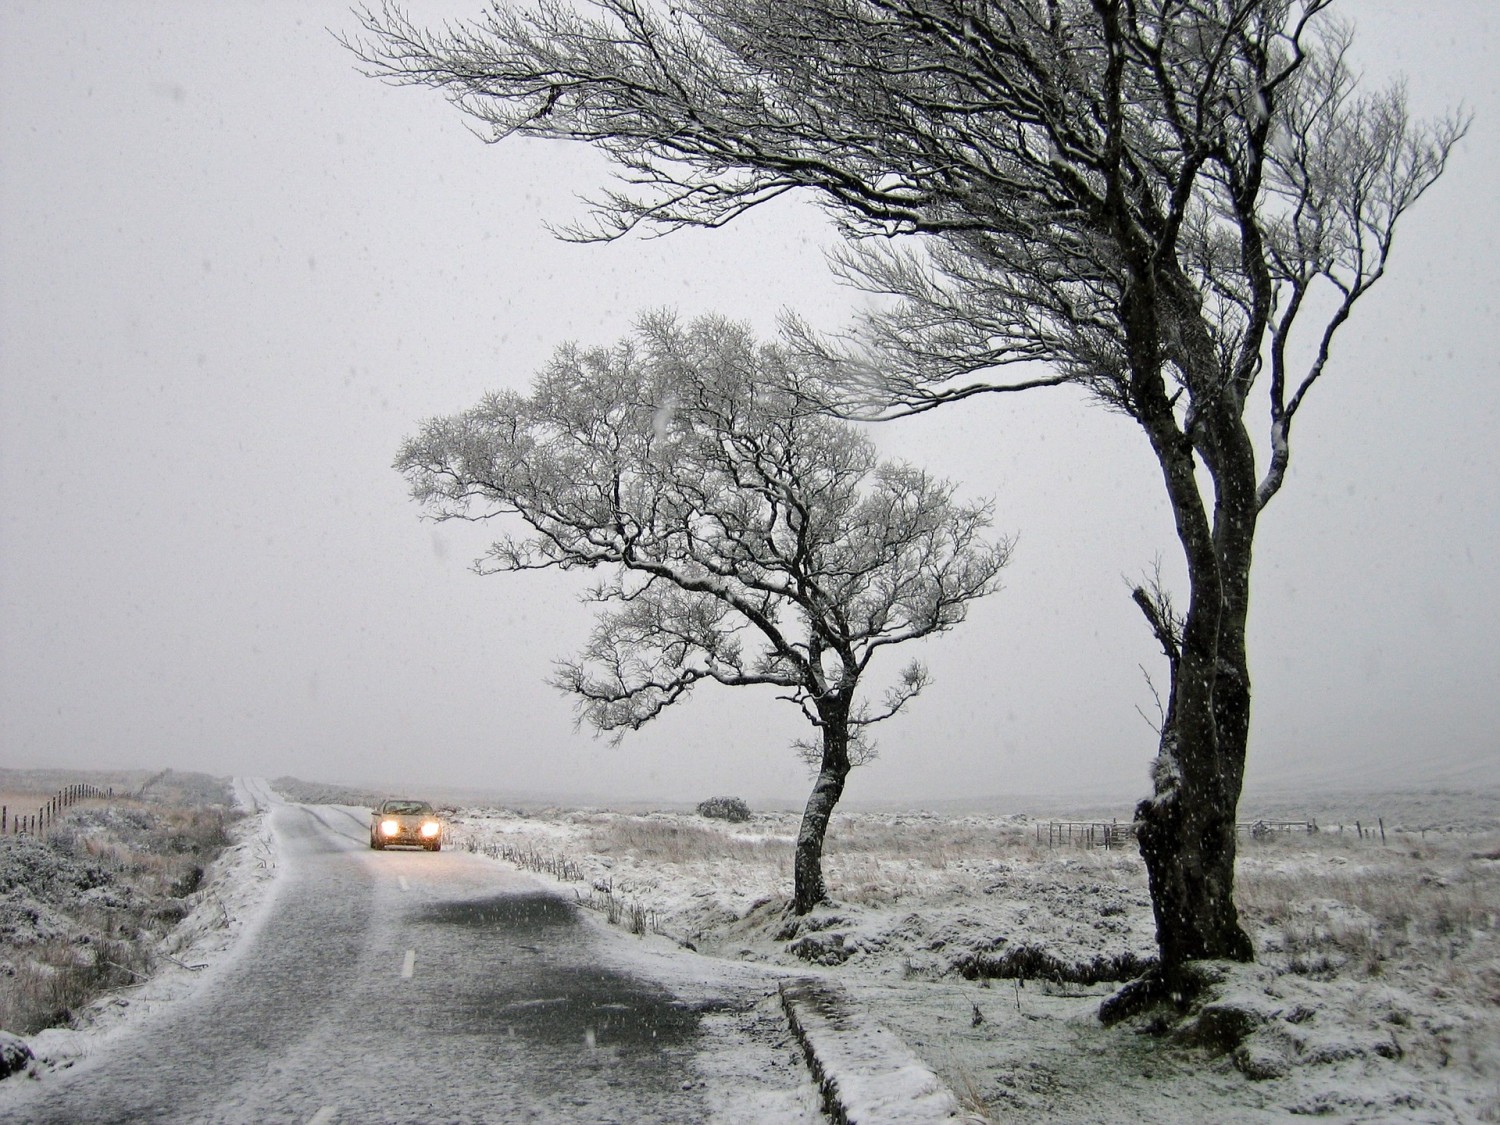  Eső, hó, szél, mínuszok: zordabb arcát mutatja a tél